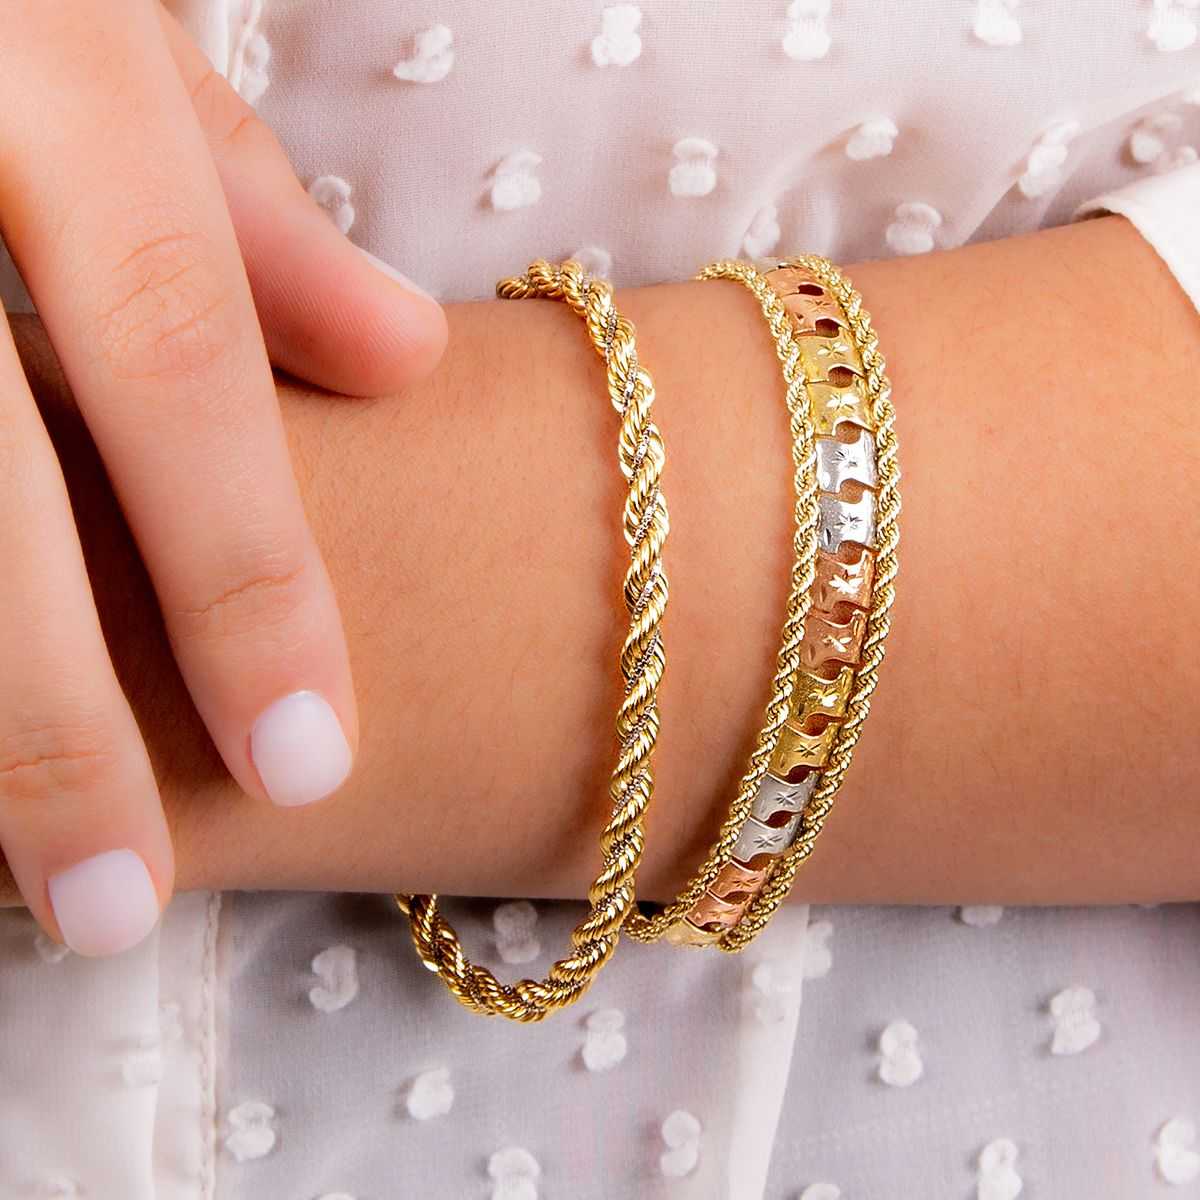 На какой руке женщины носят браслеты? общие правила ношения золотых и серебряных браслетов, значение и приметы